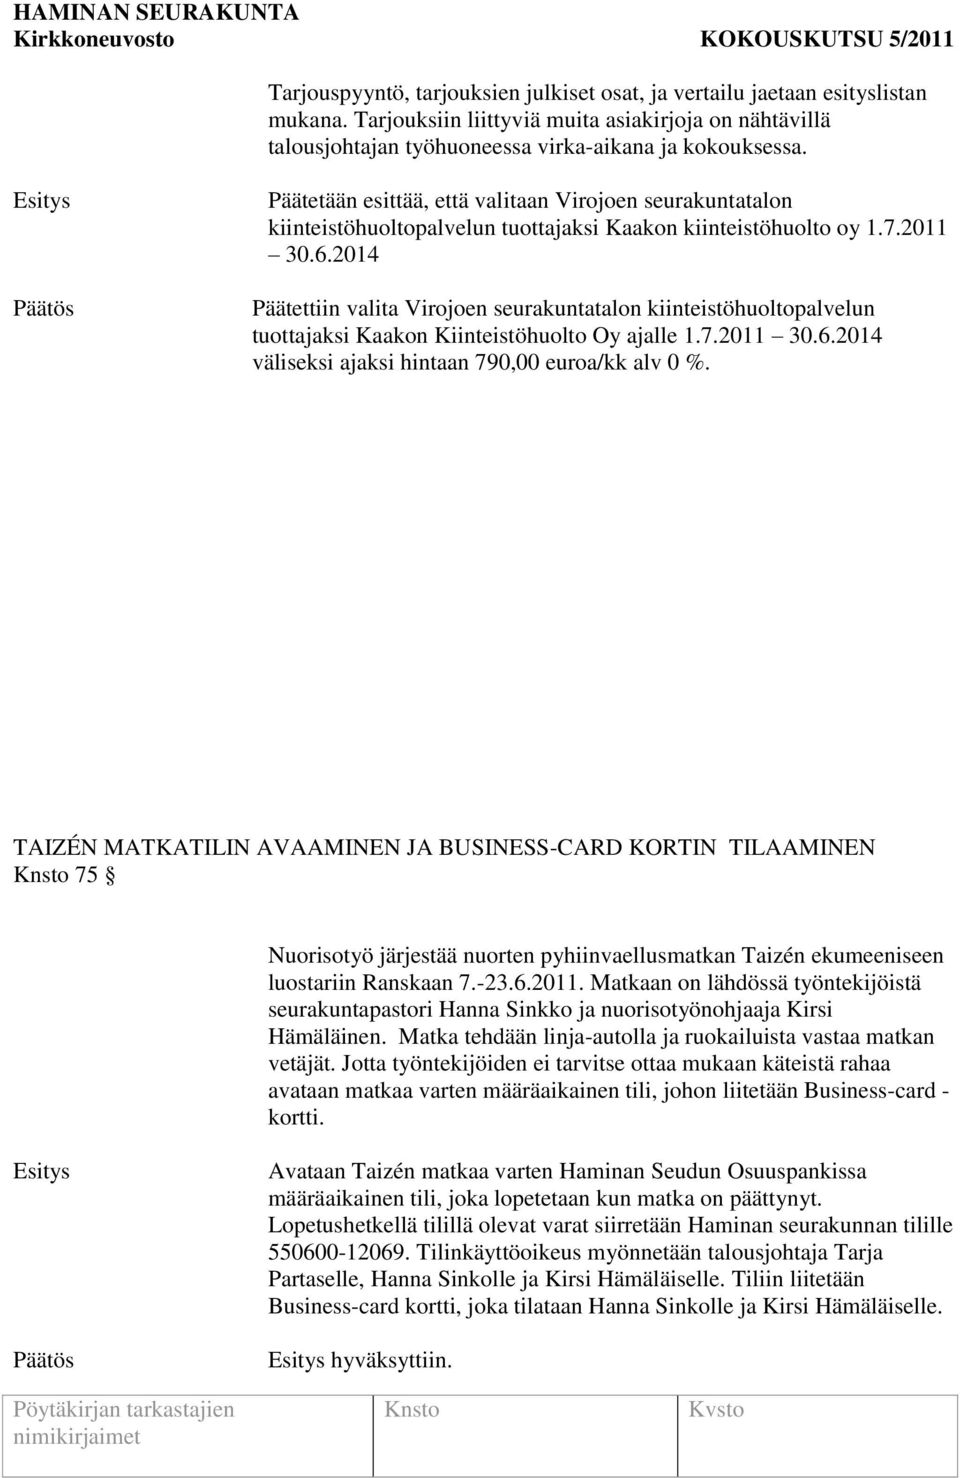 2014 Päätettiin valita Virojoen seurakuntatalon kiinteistöhuoltopalvelun tuottajaksi Kaakon Kiinteistöhuolto Oy ajalle 1.7.2011 30.6.2014 väliseksi ajaksi hintaan 790,00 euroa/kk alv 0 %.